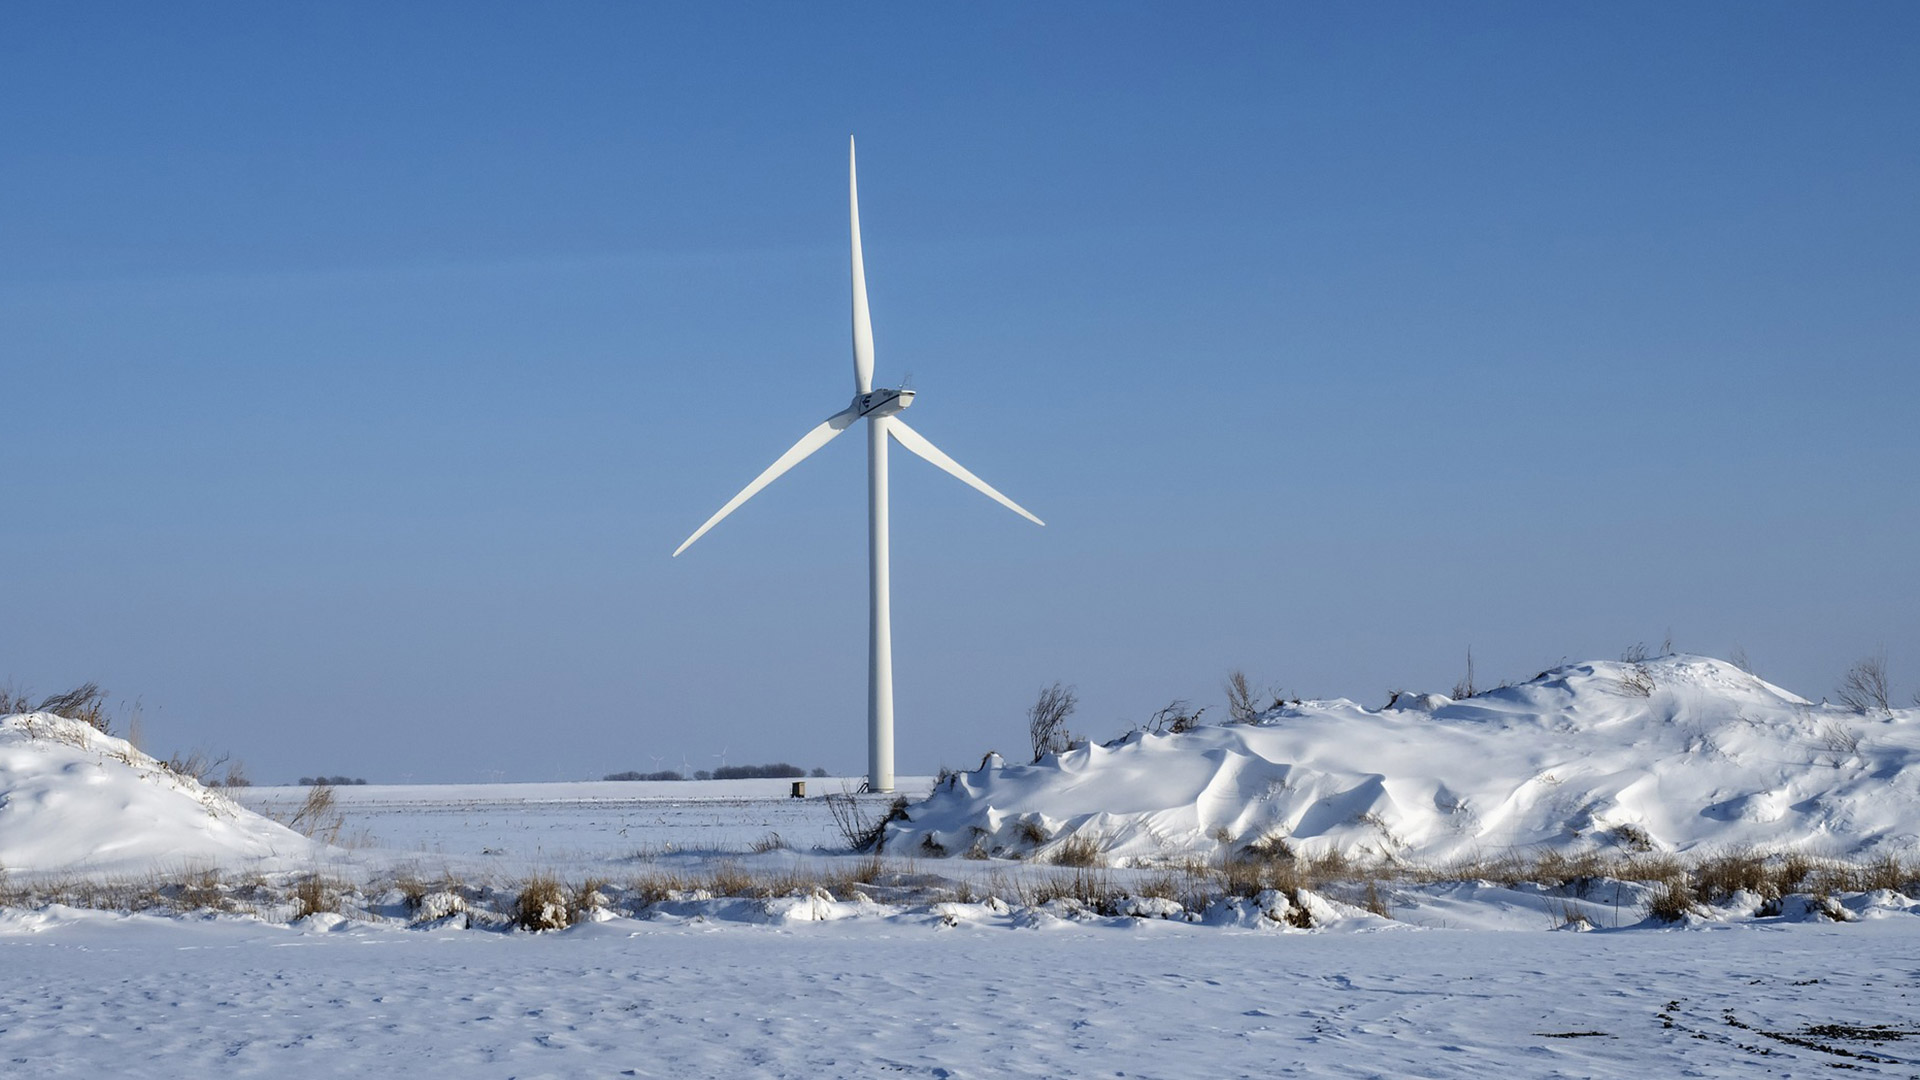 Tuulivoimaloista viime vuonna yli 17 miljoonaa euroa kiinteistöveroa